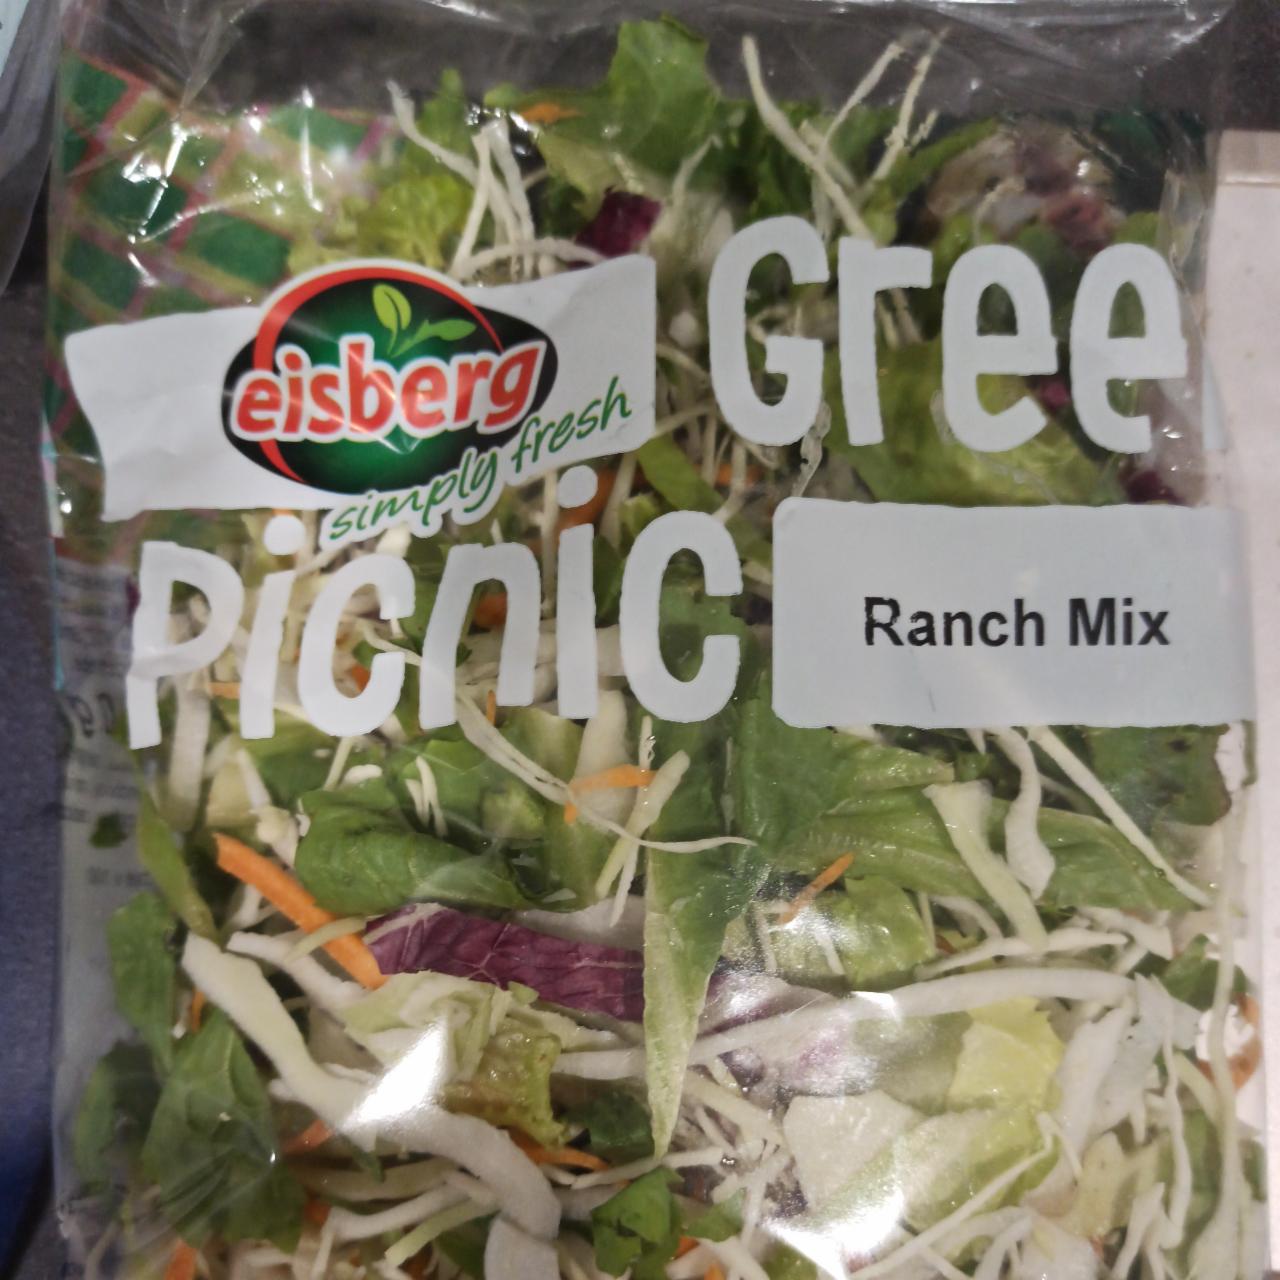 Képek - Eisberg Ranch Mix friss salátakeverék 110 g